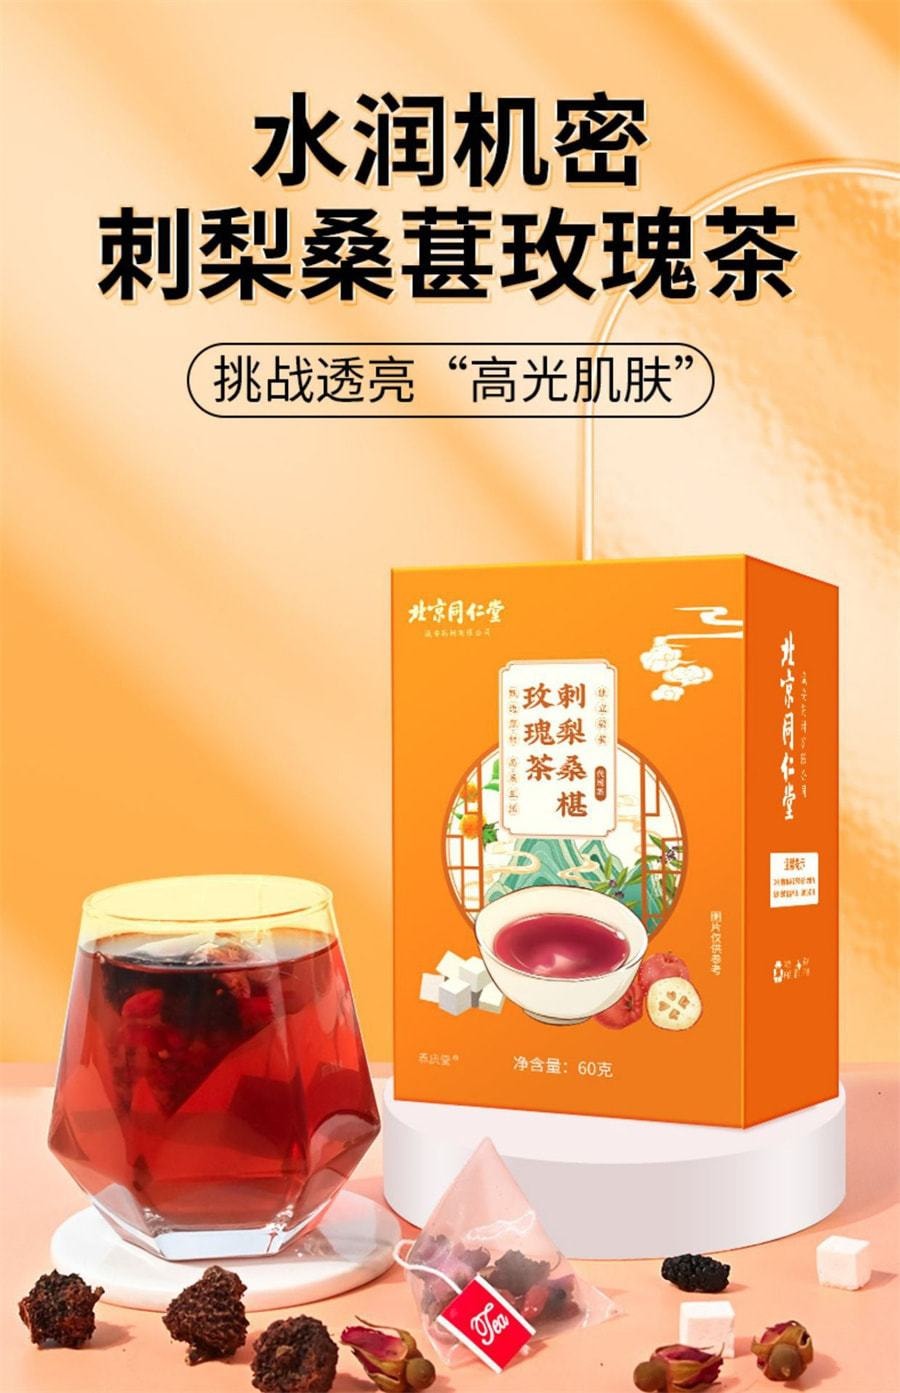 中國 北京同仁堂 刺梨桑葚玫瑰茶 早c晚a茶 滋養養生茶 60g/盒